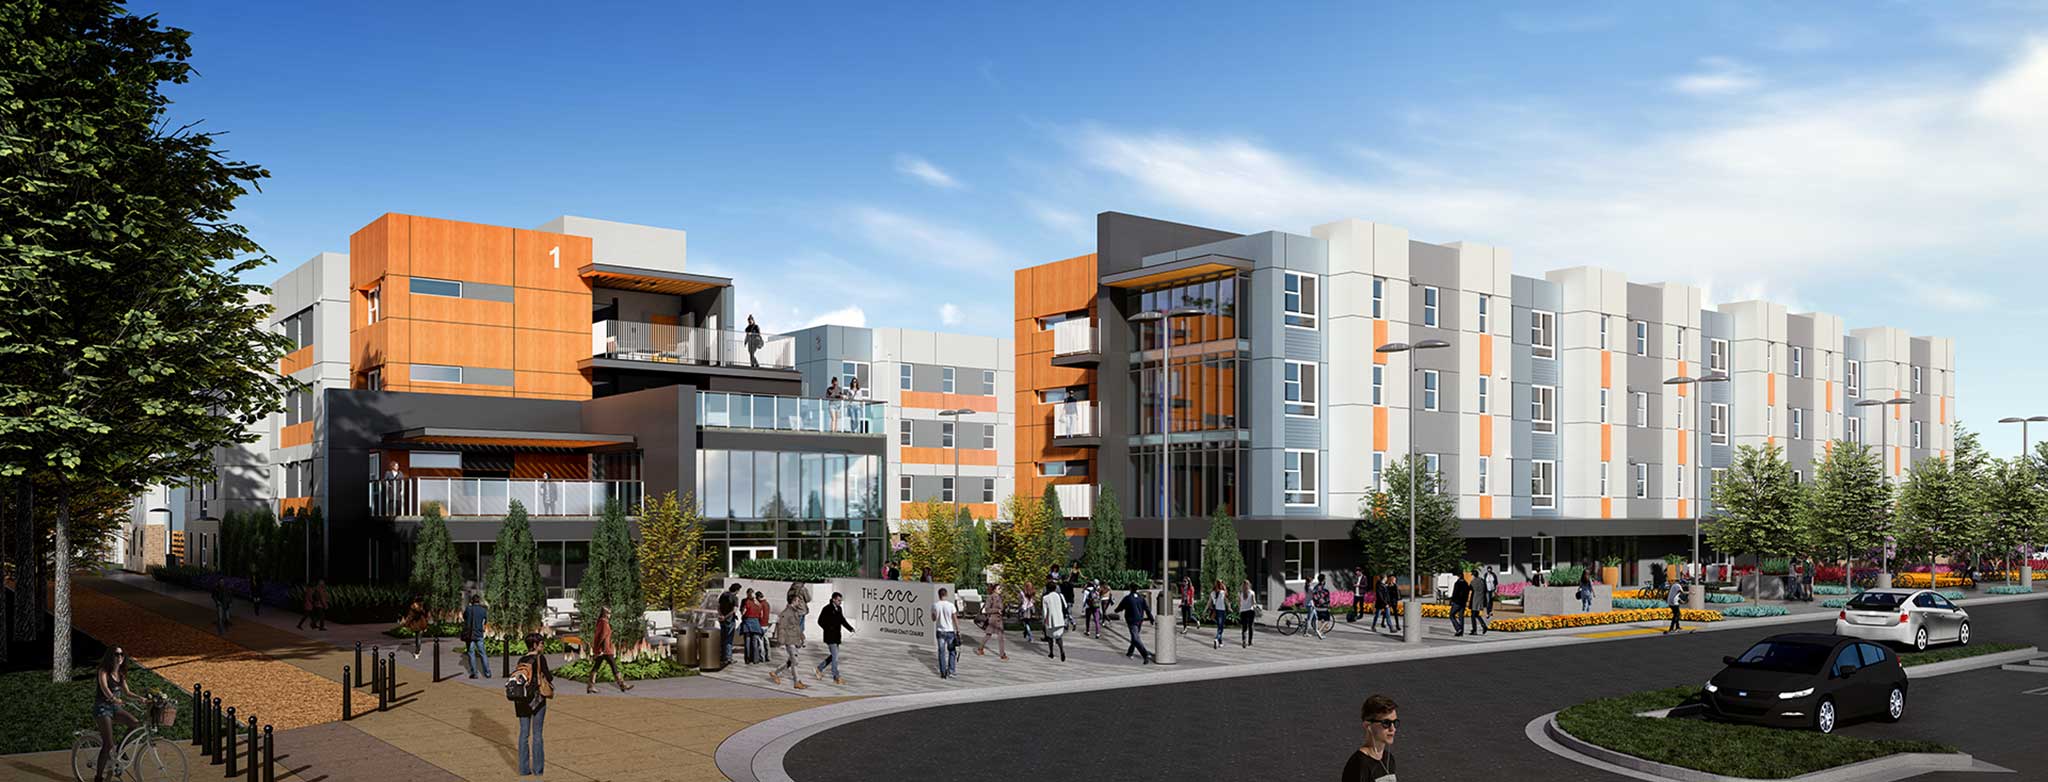 Servitas, Orange Coast College Complete $123 Million Residence Hall